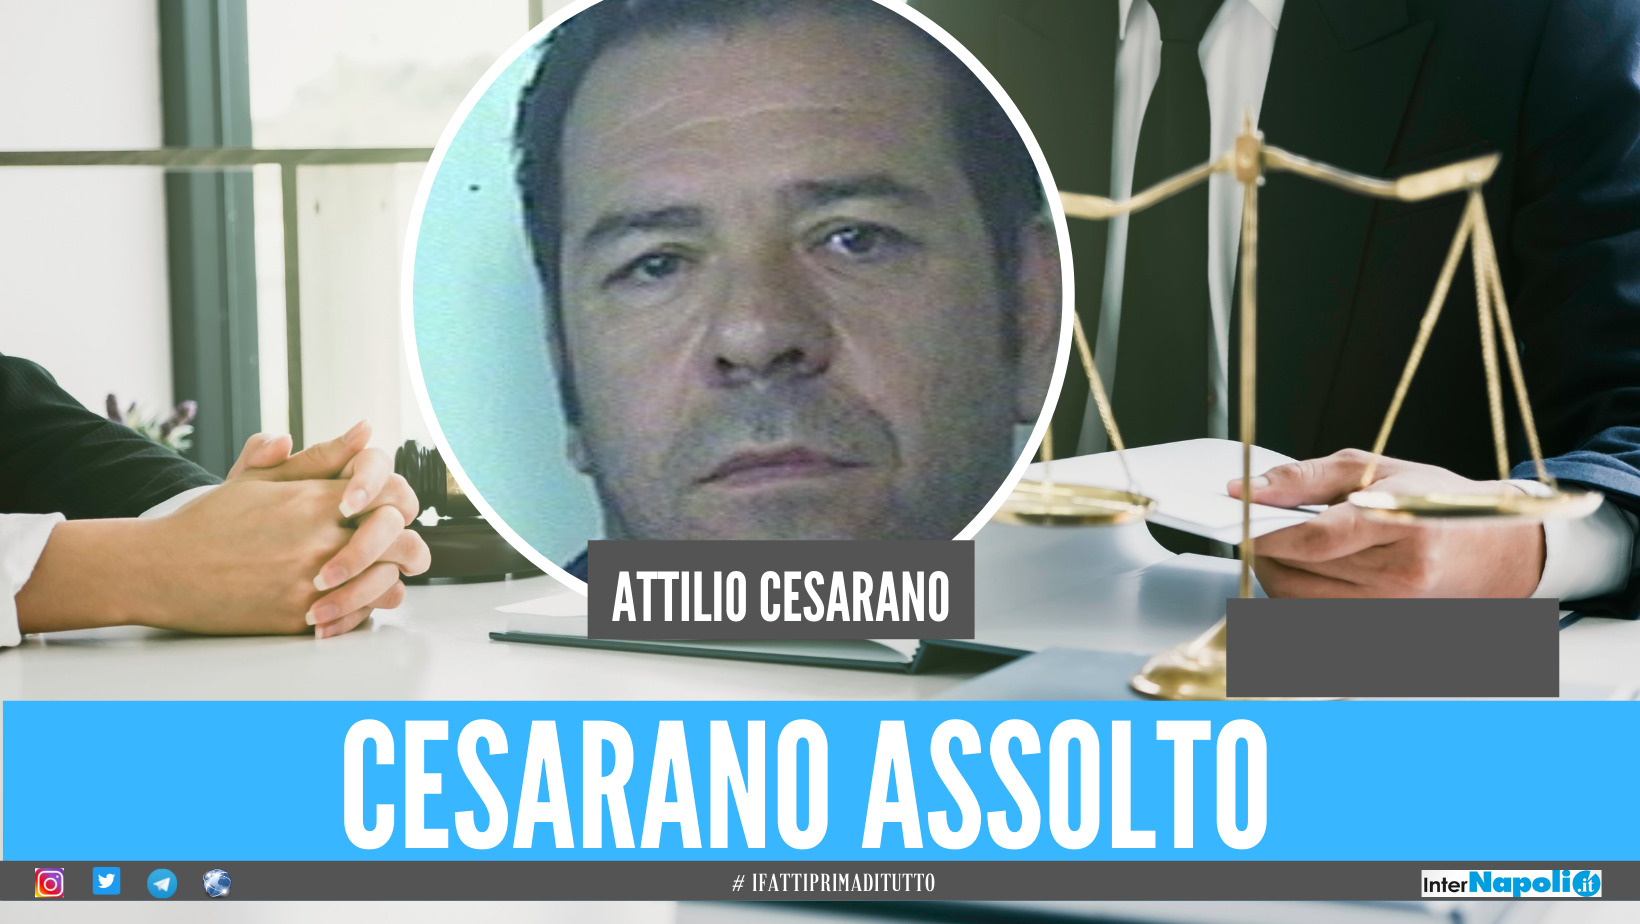 Attilio Cesarano